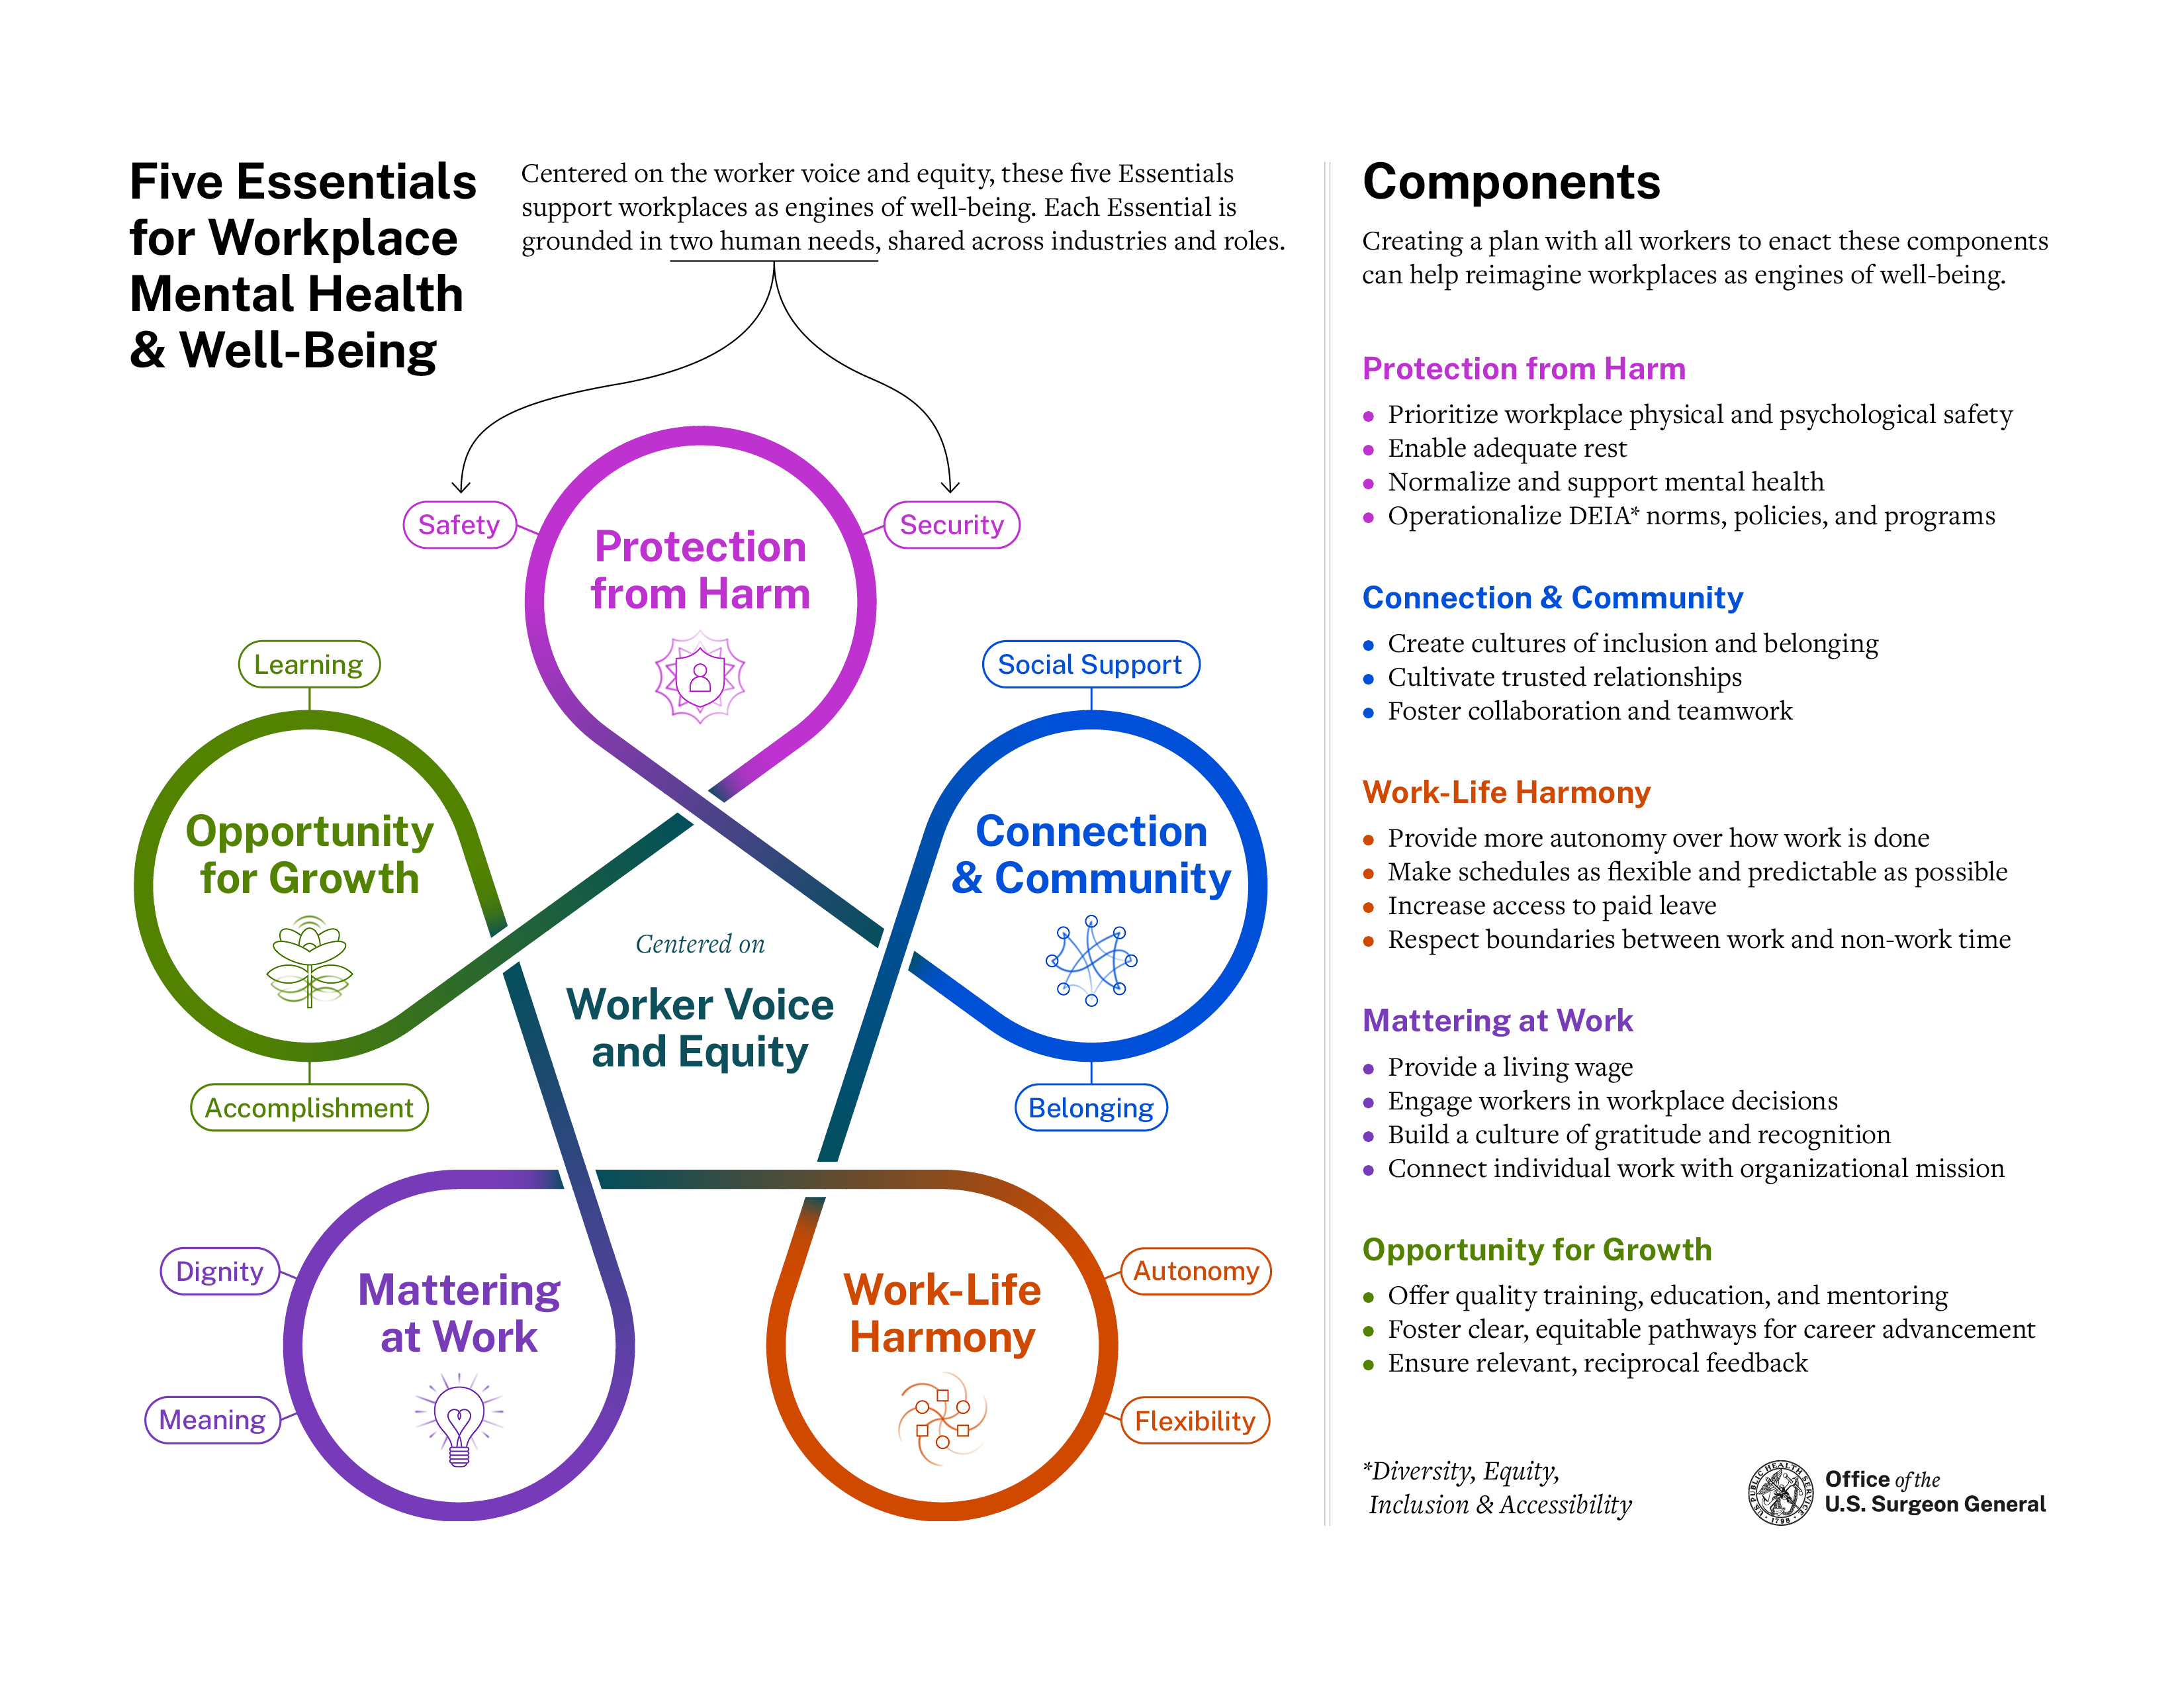 外科医生发布的工作场所框架图有助于工作场所的心理健康